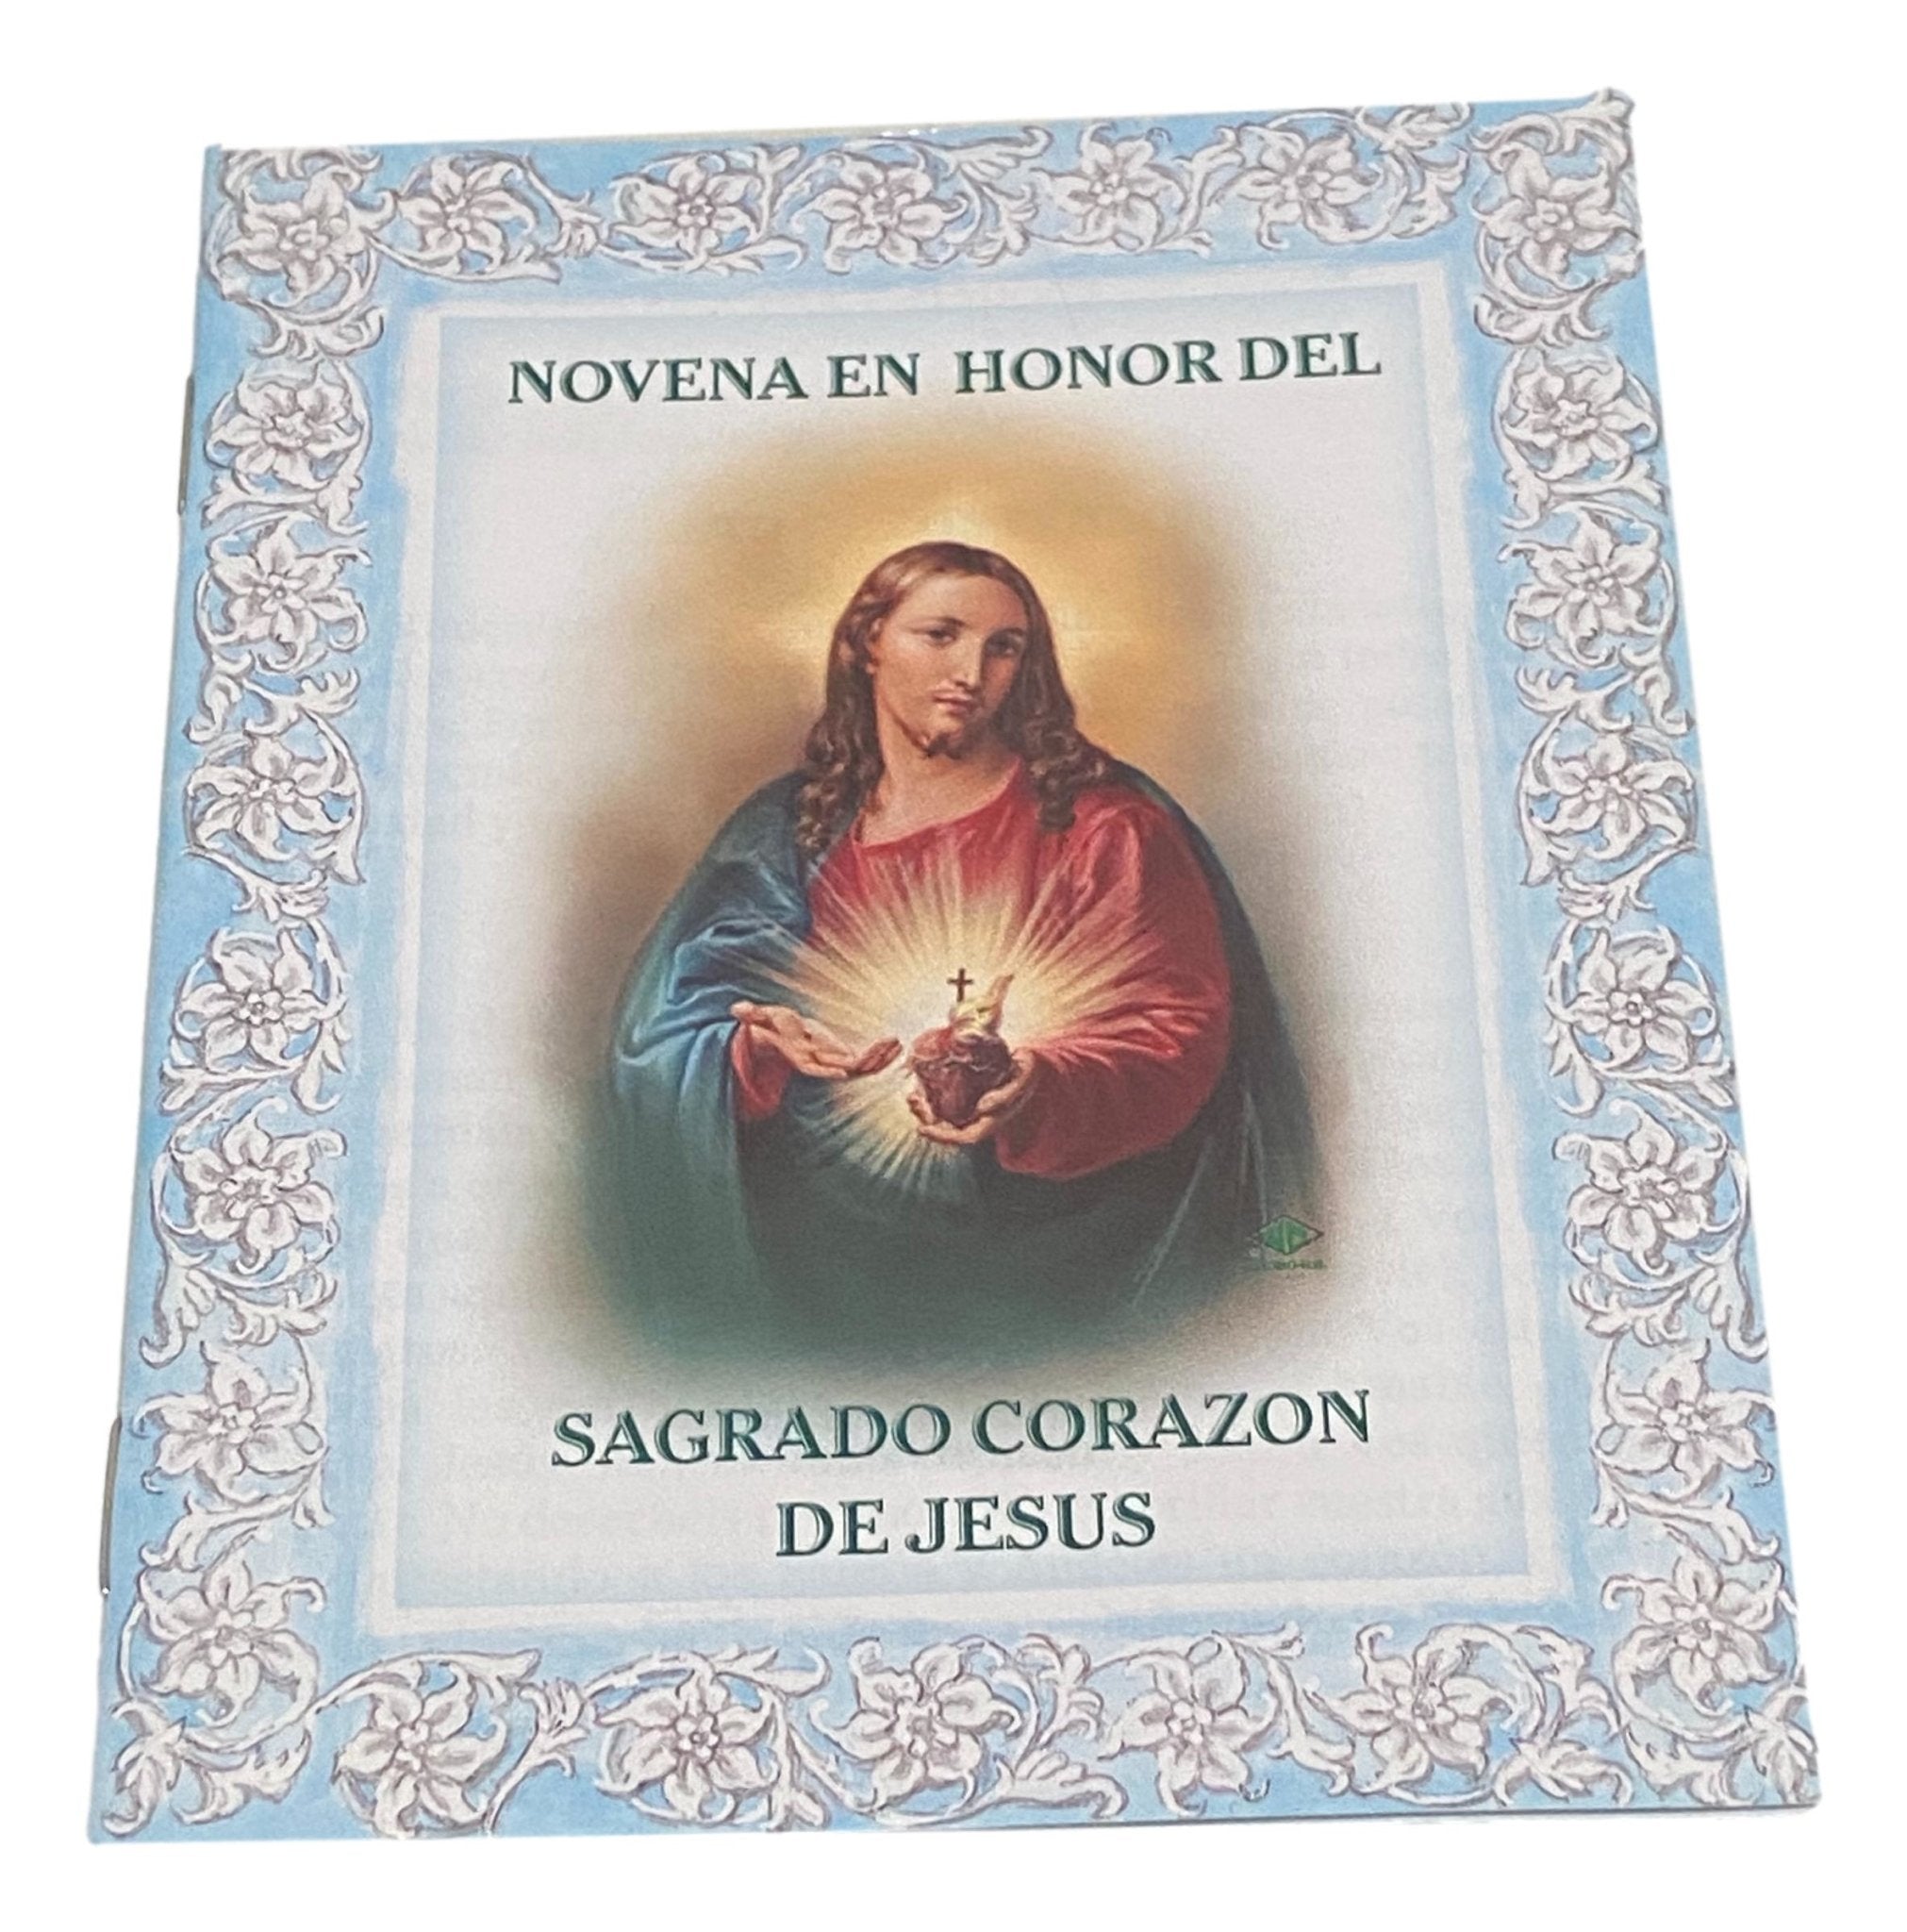 Book Novena En Honor Del Sagrado Corazon De Jesus - Ysleta Mission Gift Shop- VOTED El Paso's Best Gift Shop